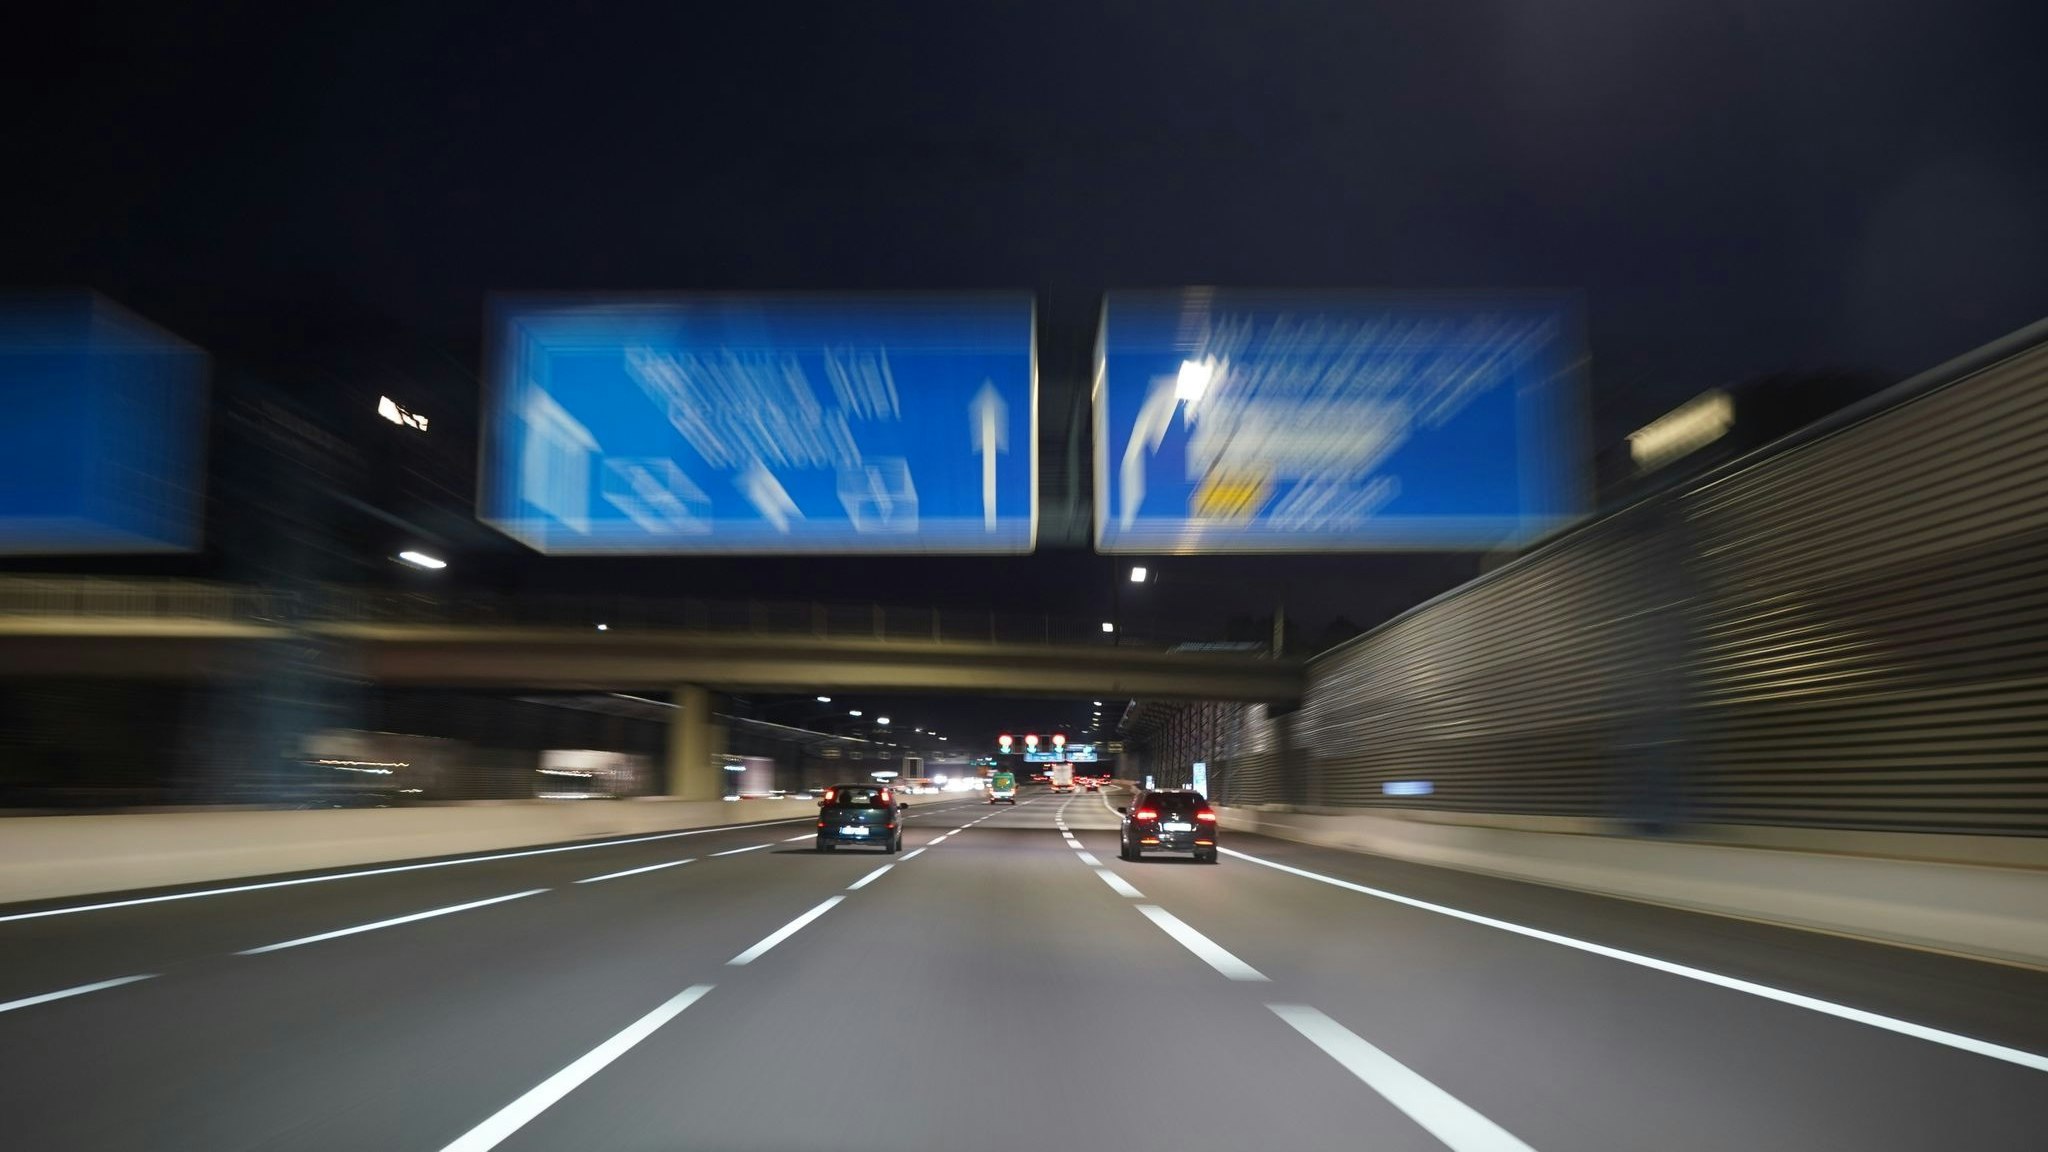 Die FDP will Autobahnen schneller bauen lassen. Das lehnen die Grünen ab. Foto: dpa/Brandt